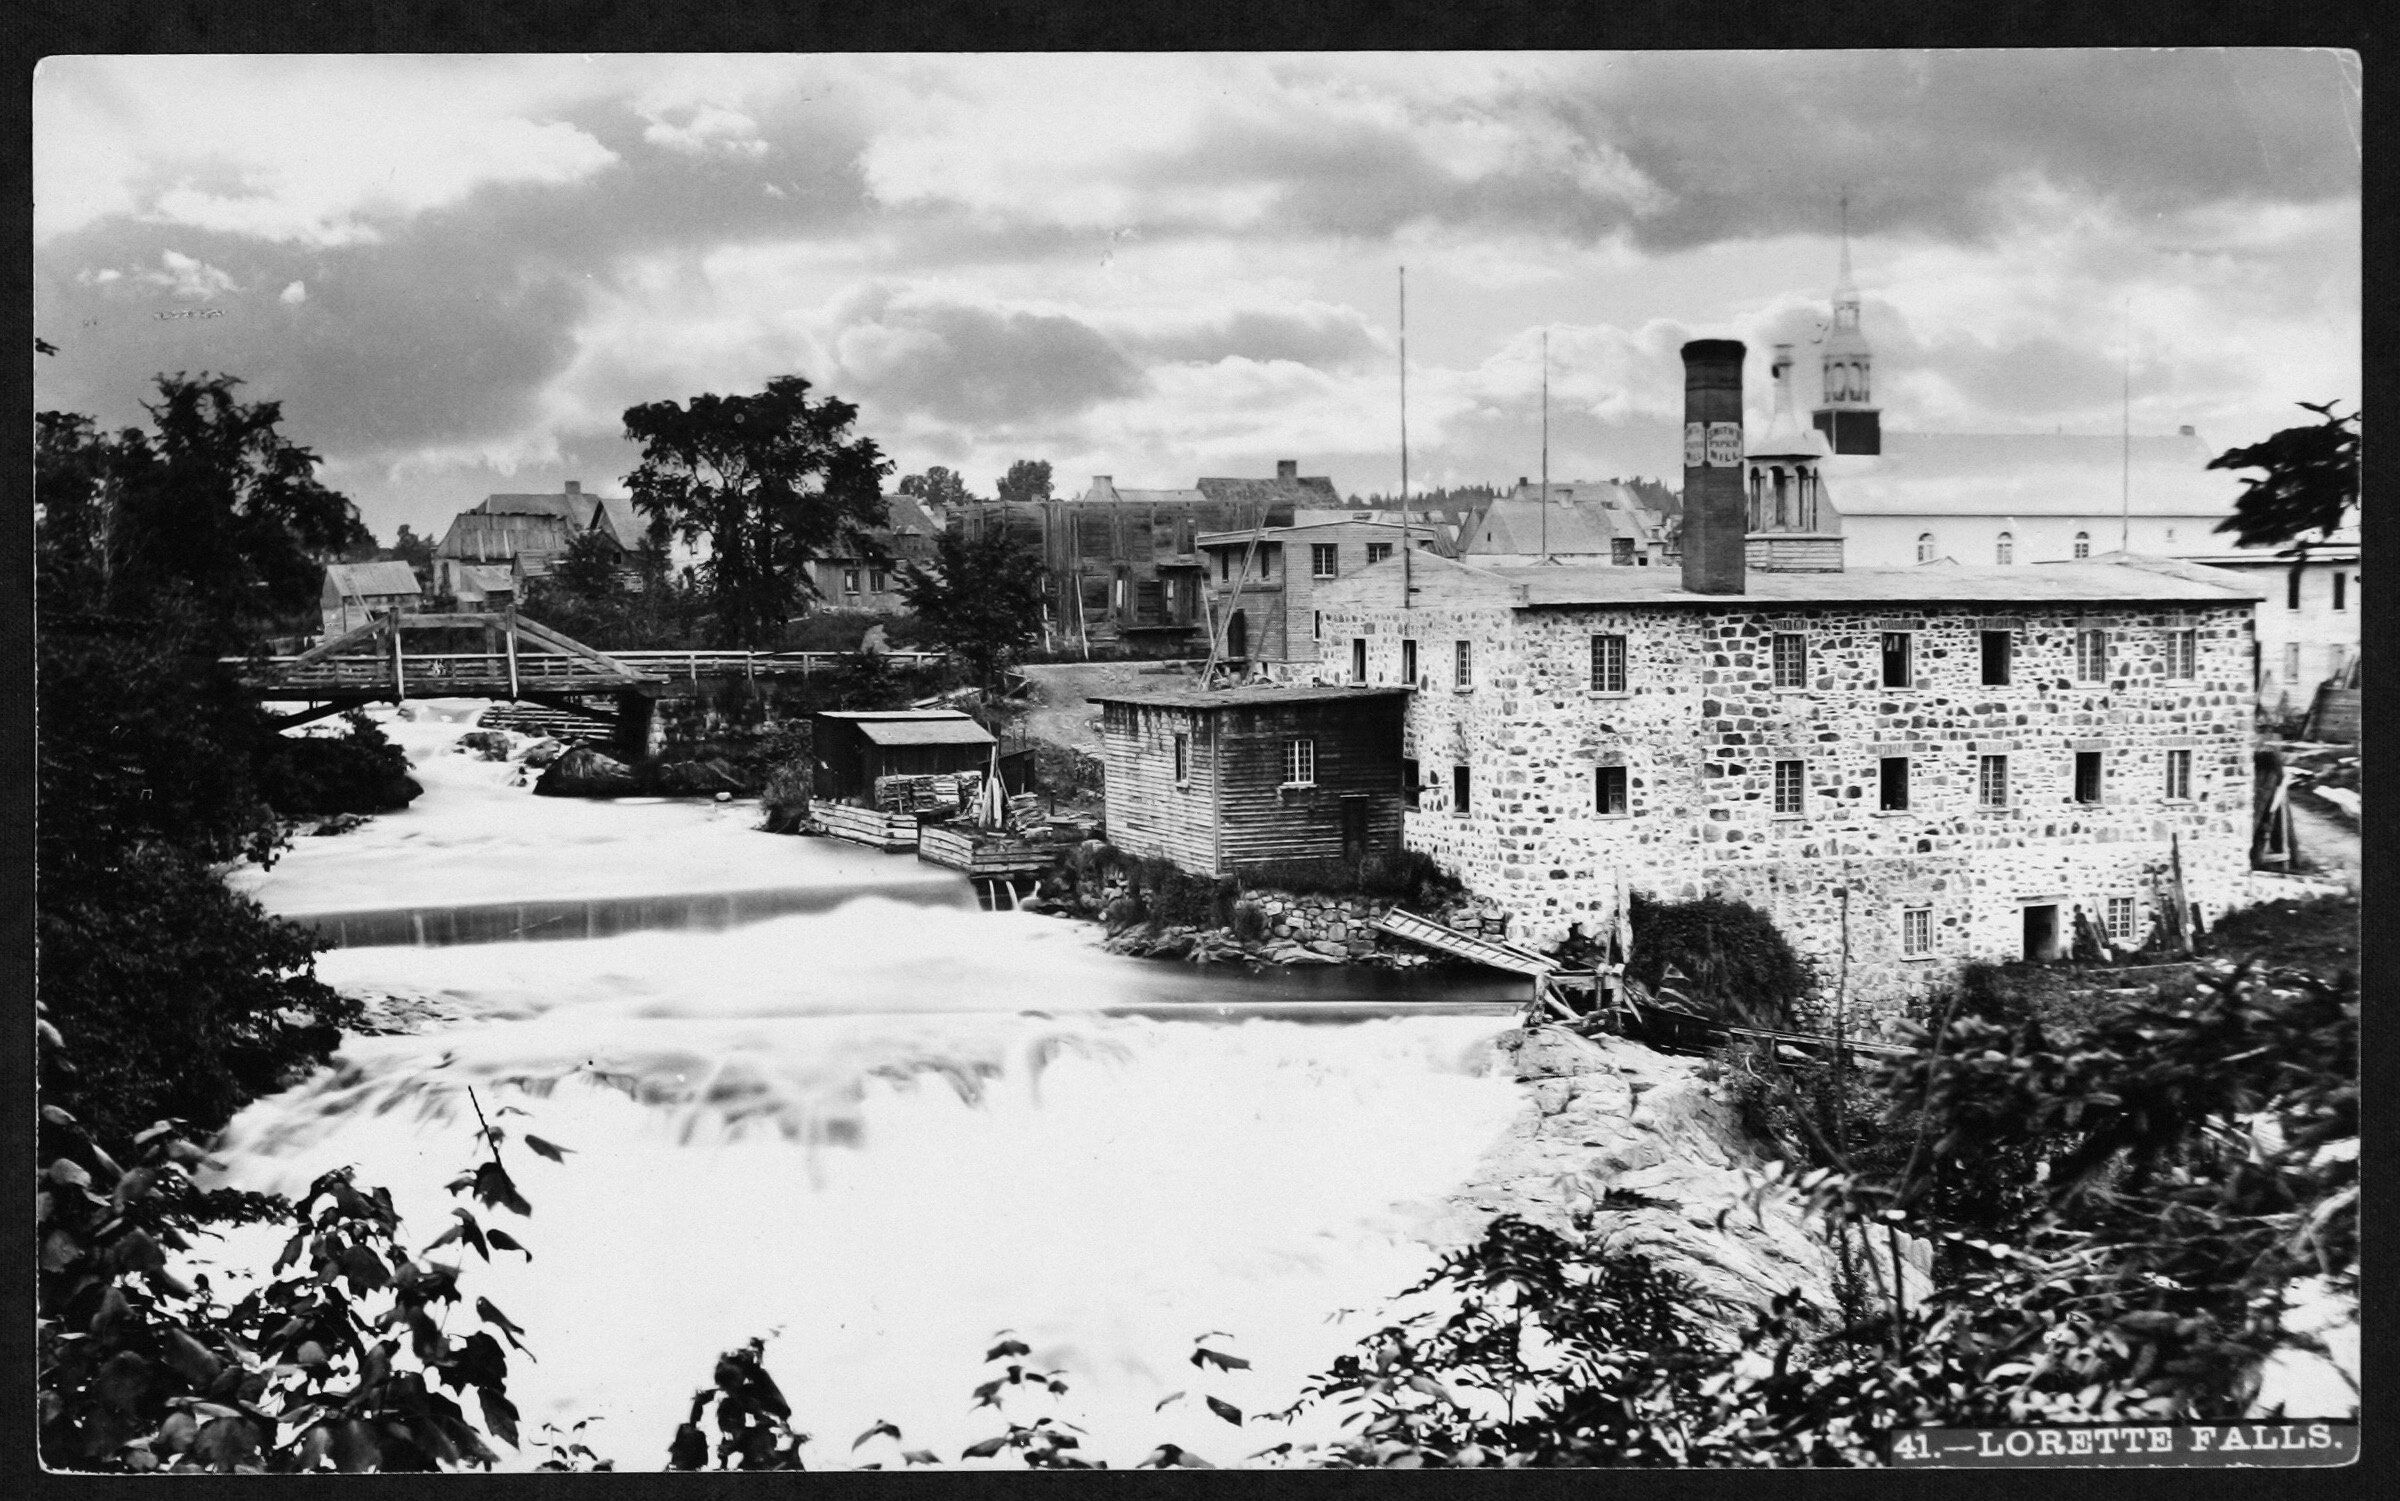 Photo noir et blanc montrant un édifice en briques pâles près d'une rivière.e